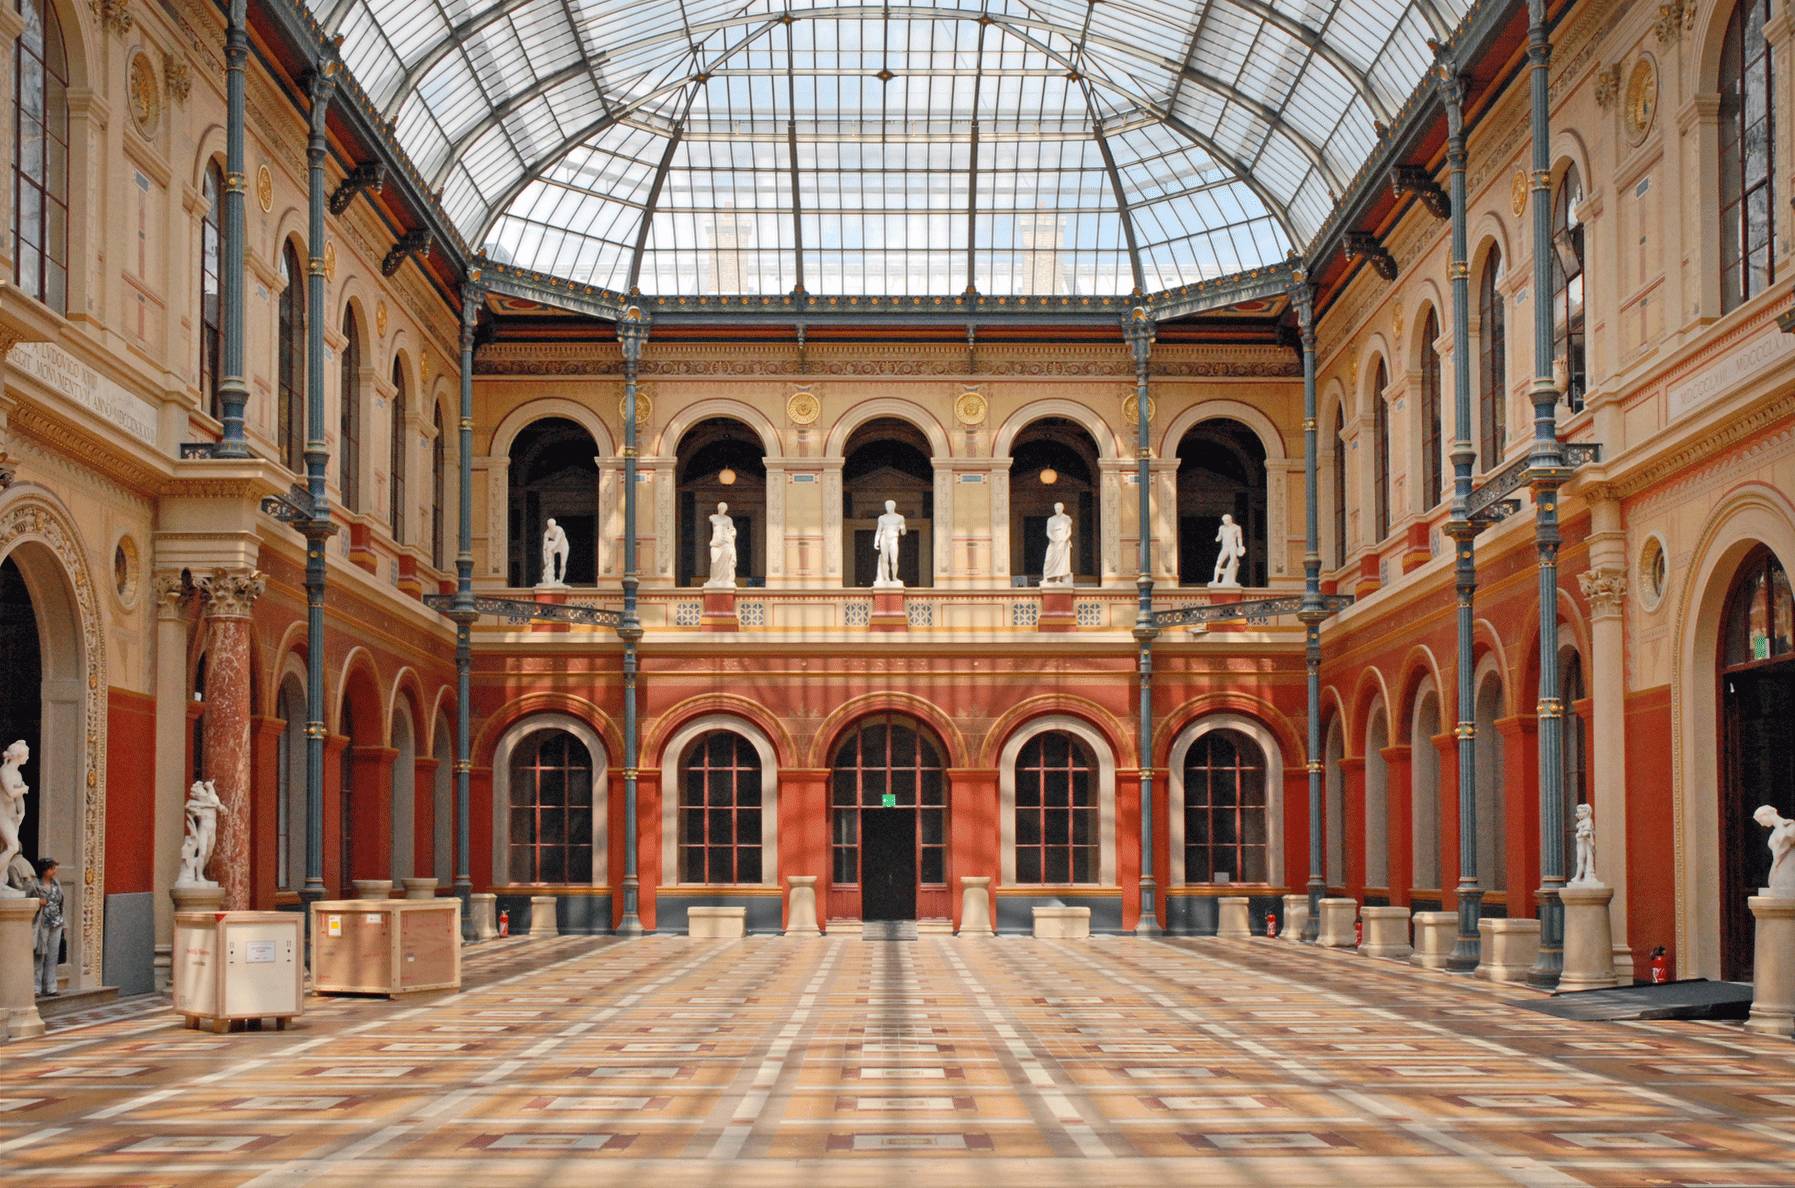 巴黎美术学院新尝试:建立一座“高调”博物馆 | VISION-搜狐